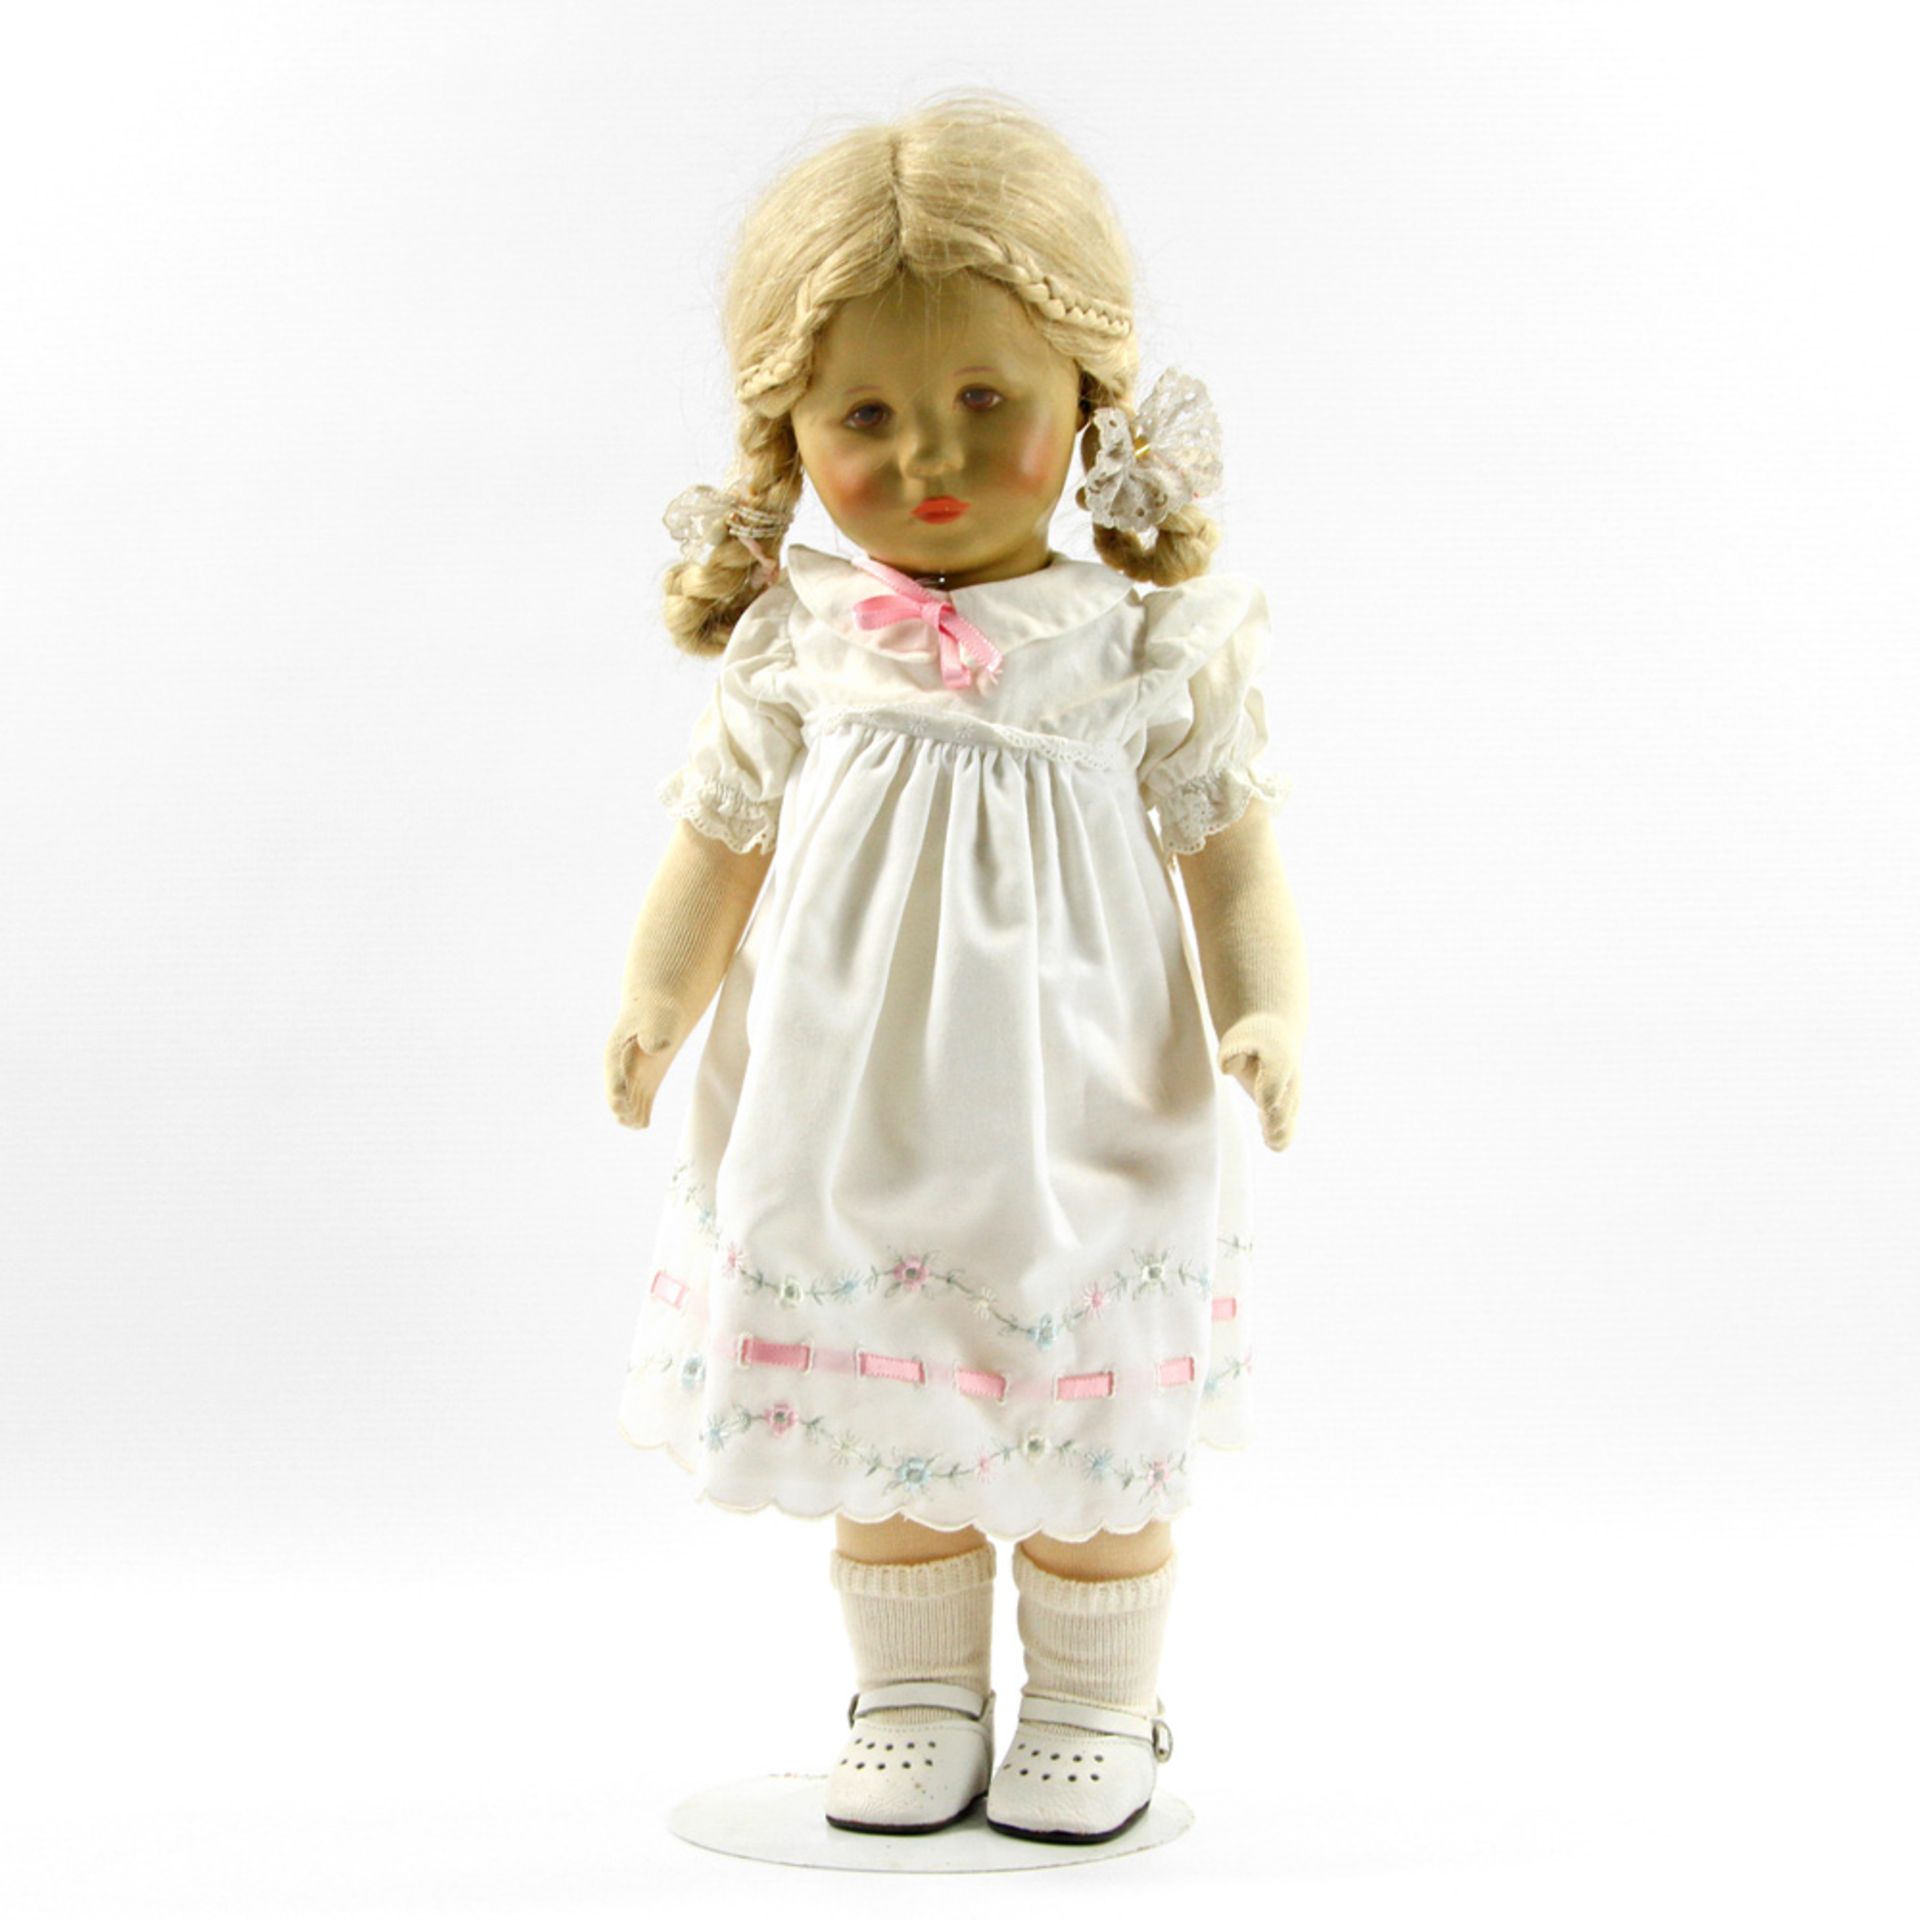 KÄTHE KRUSE Puppe, gestempelt 1988, gemaltes Gesicht mit braunen Augen. Stoffkörper, blonde Perücke.